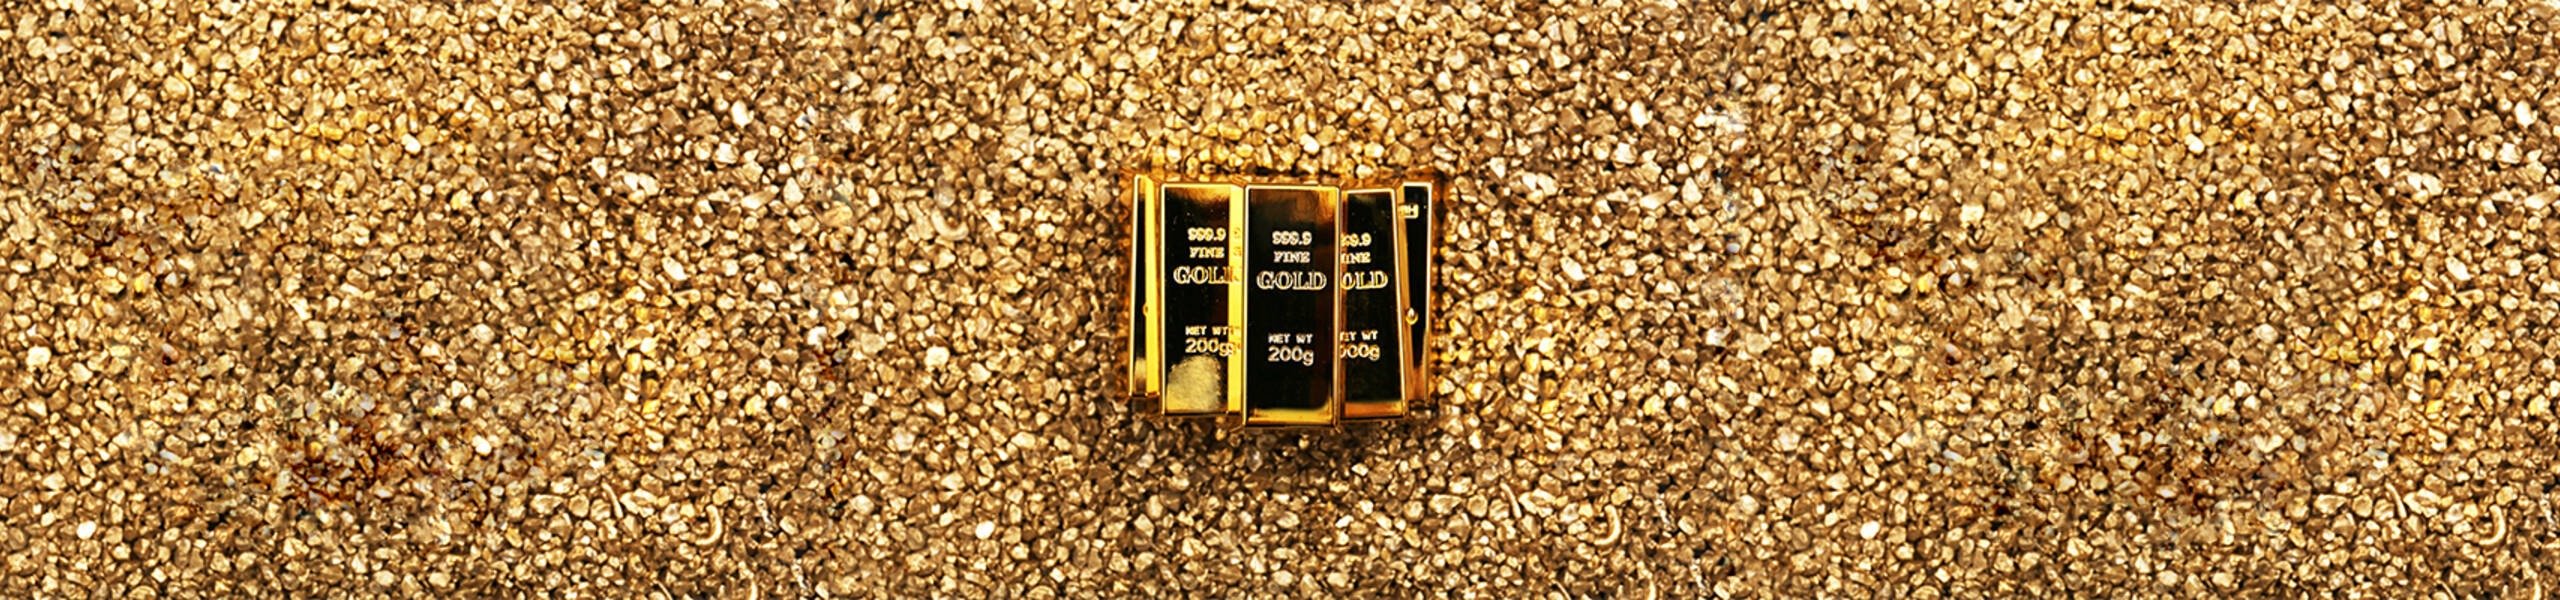 Los precios del Oro ganan terreno tras eventos políticos en EE.UU